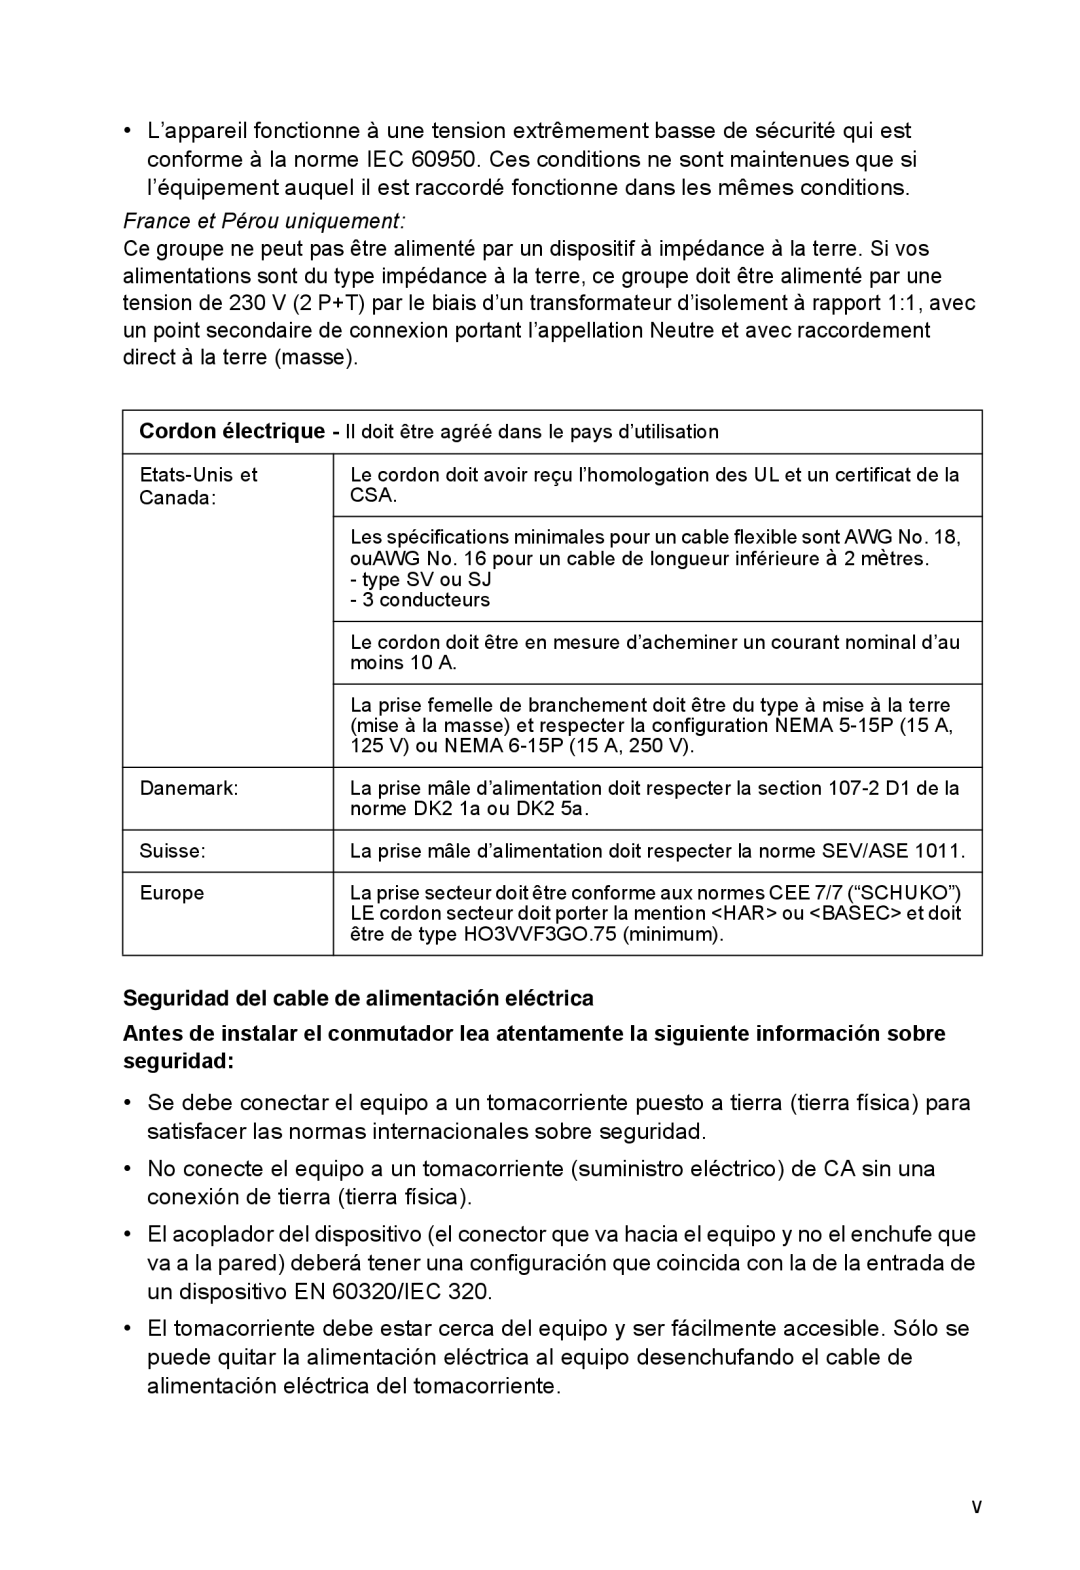 SMC Networks SMC8126PL2-F manual France et Pérou uniquement, Seguridad del cable de alimentación eléctrica 